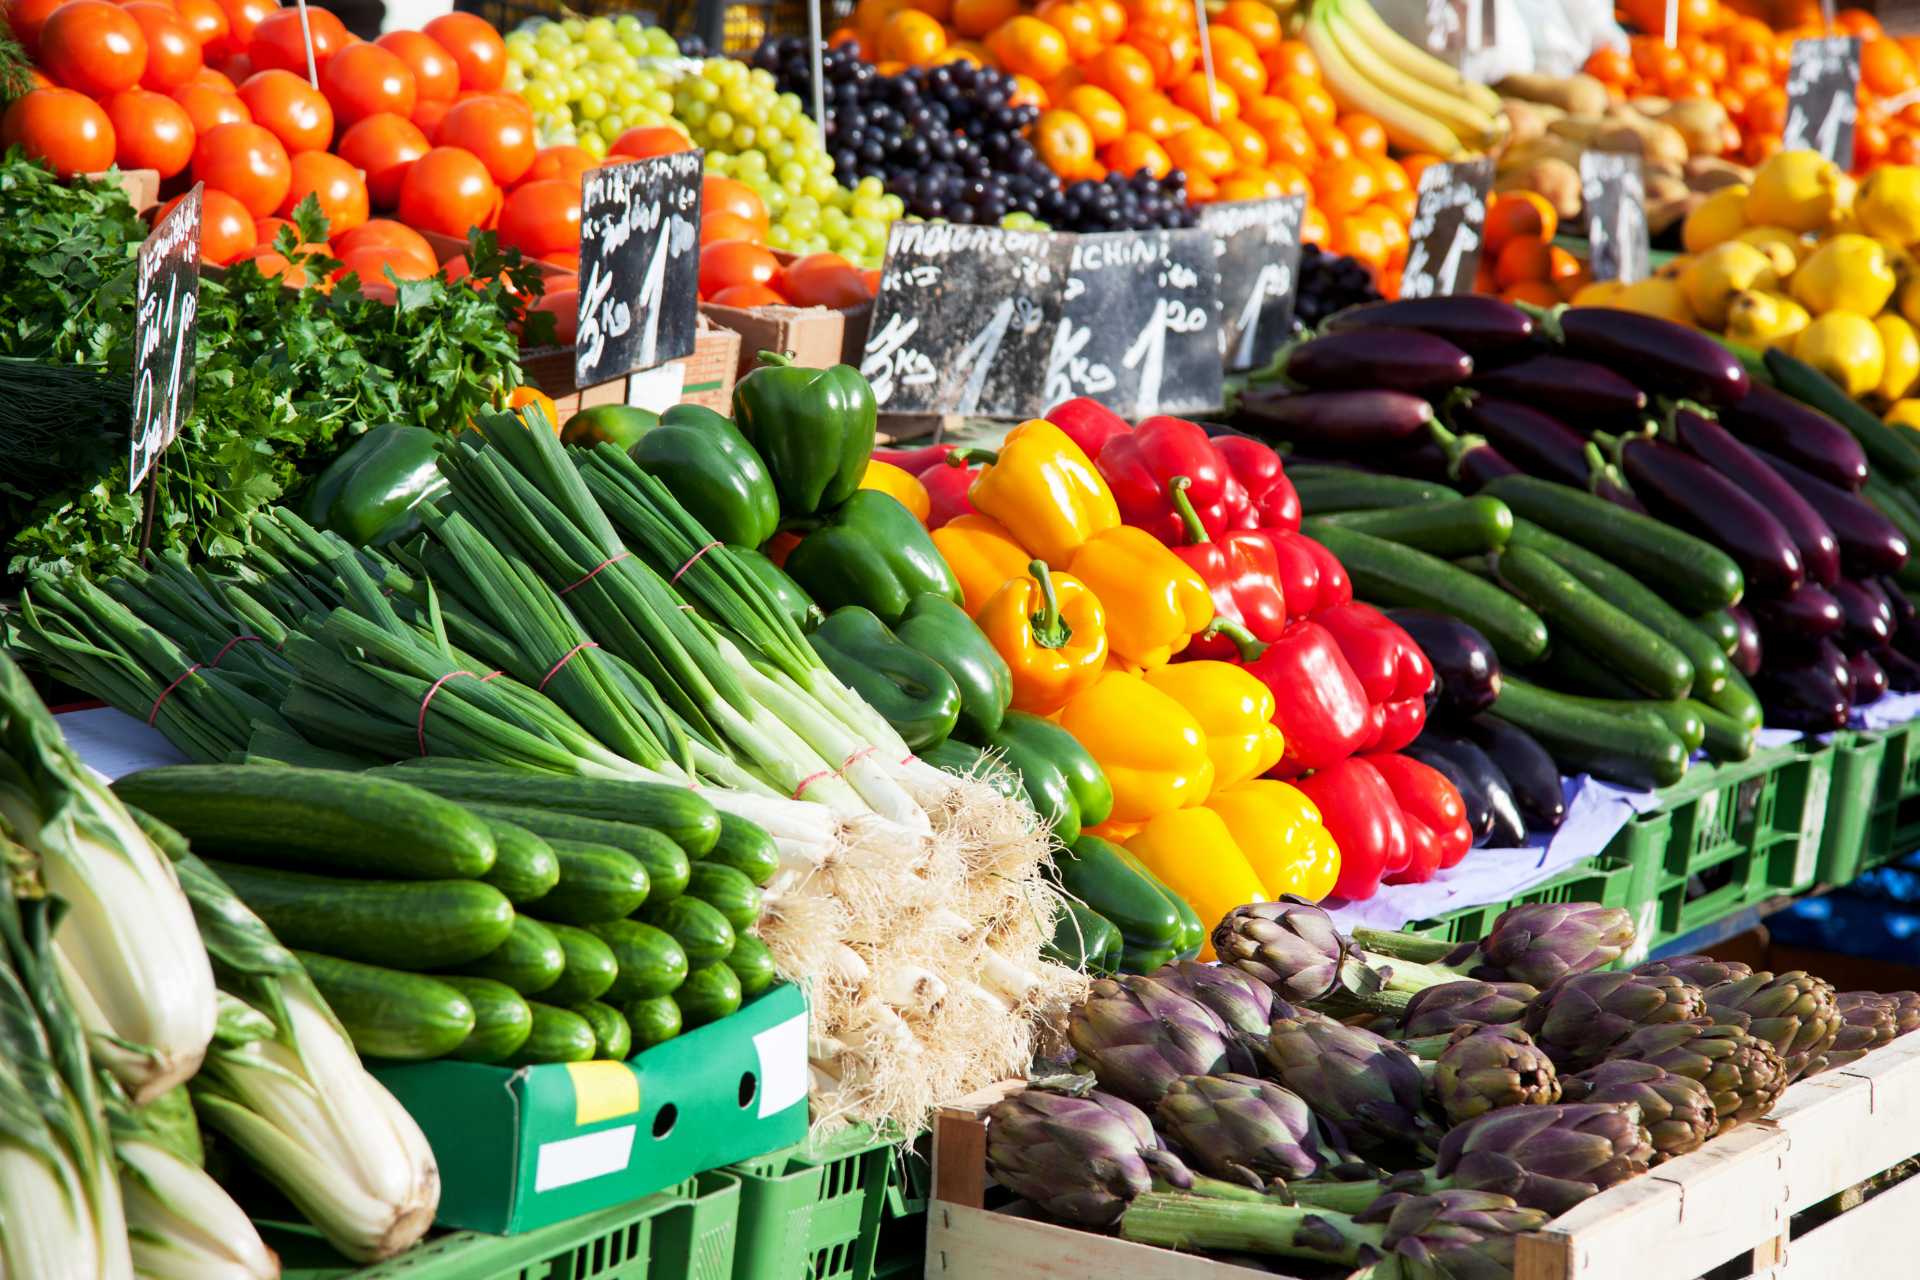 Fargerike frukt og grønnsaker i sitt naturlige tilstand på bondemarked, perfekte eksempler på råvarebasert mat.